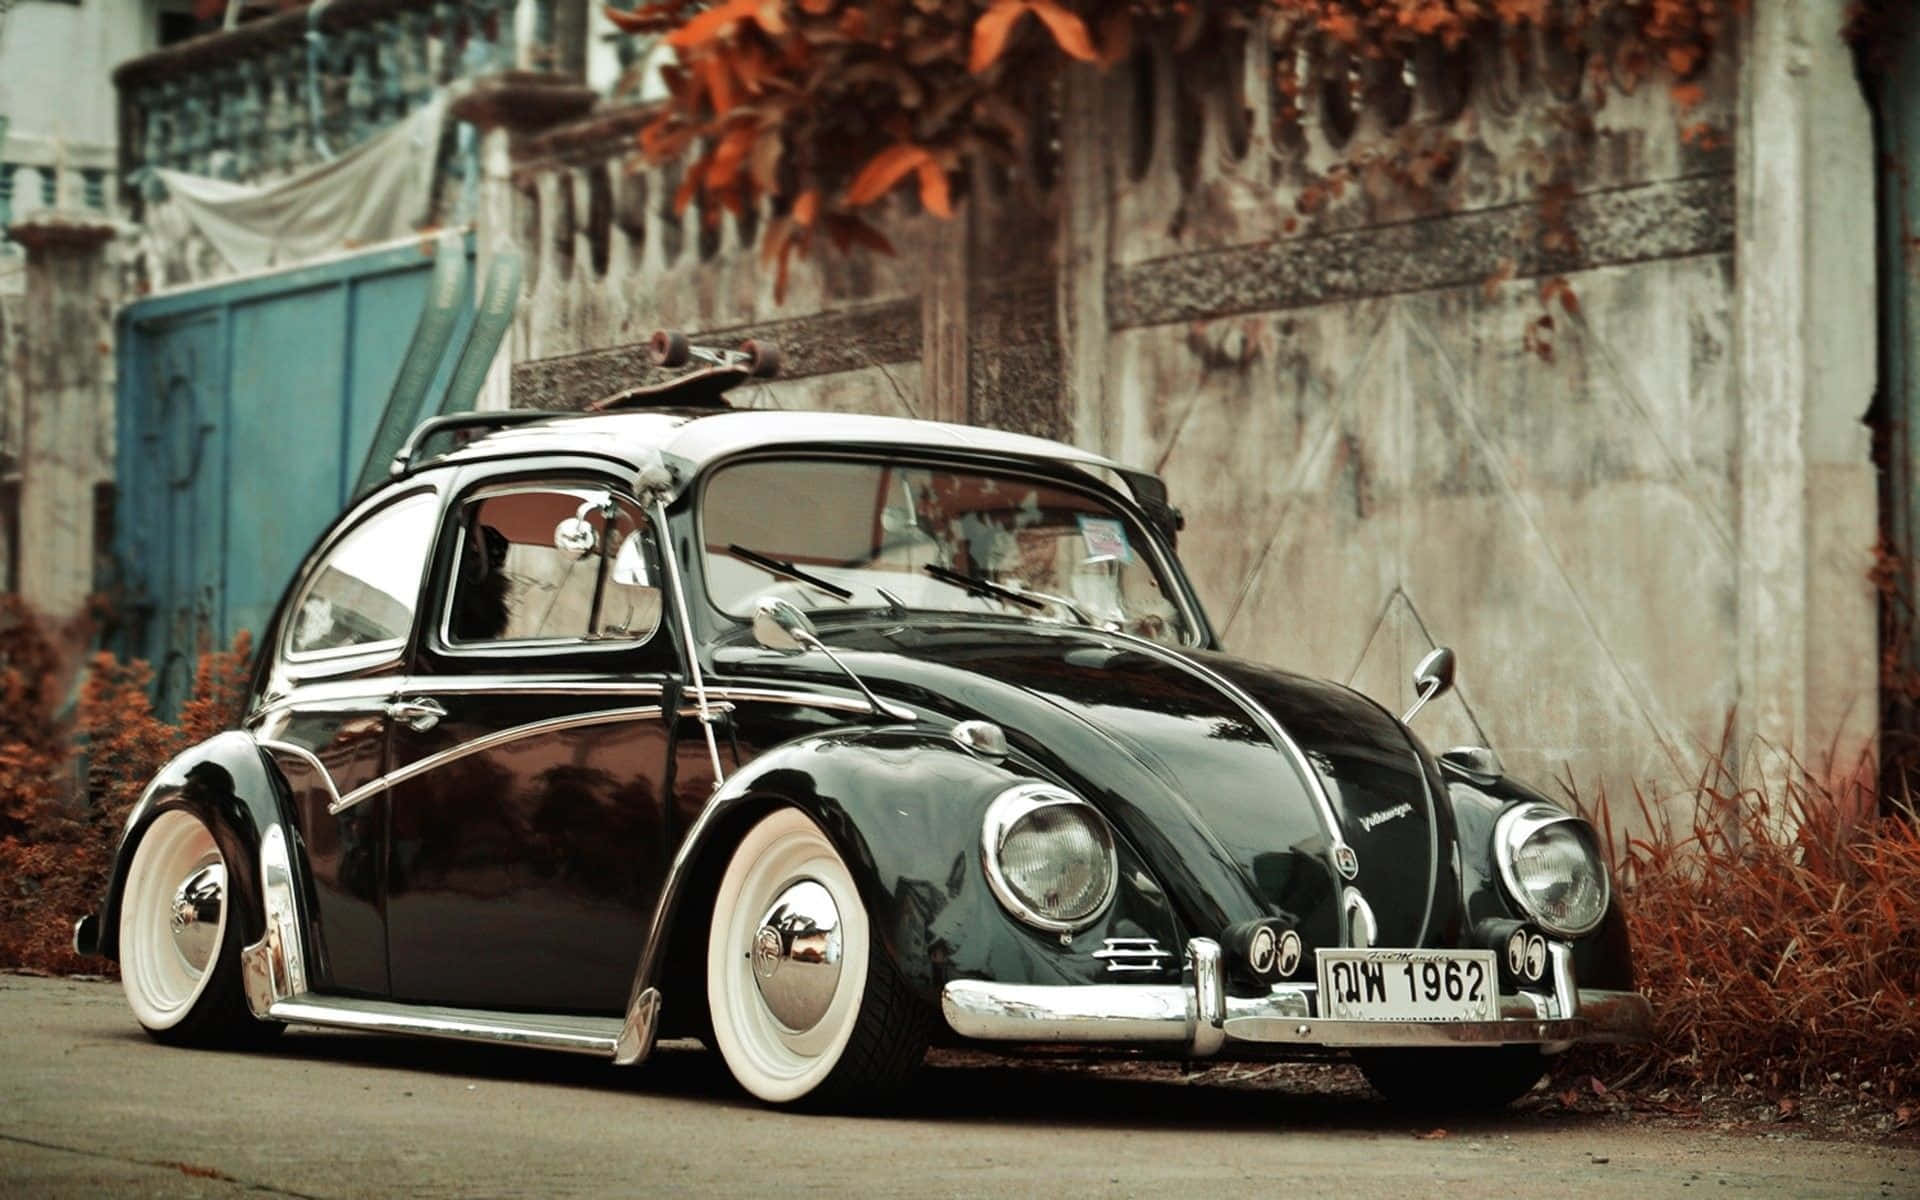 Volkswagen Beetle Wallpaper